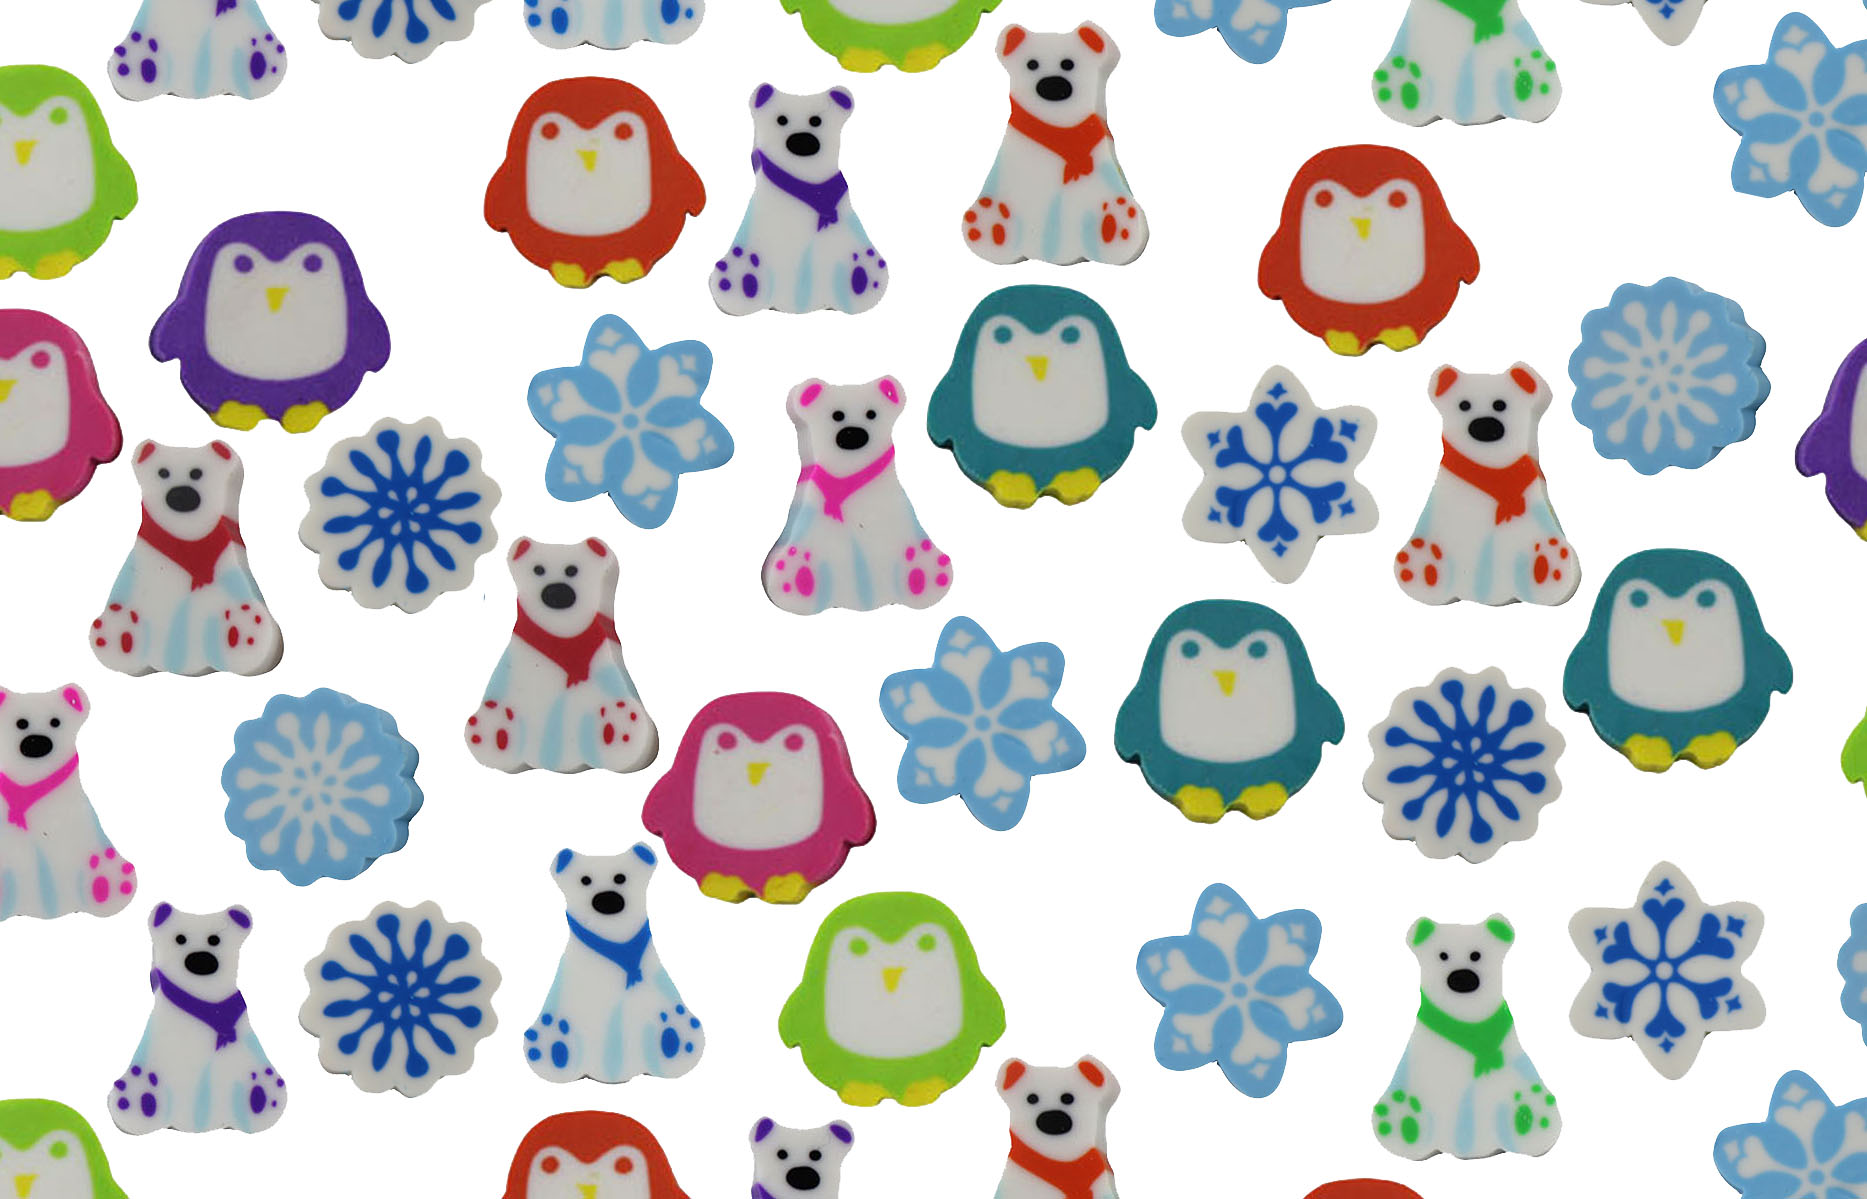 360 Winter Animal Eraser Set - Snowflake, Penguin, Polar Bear Mini Erasers  - Novelty and Functional Adorable Eraser Treasure Prize, School Classroom  Supply,- Party Favor (36 Dozen) 